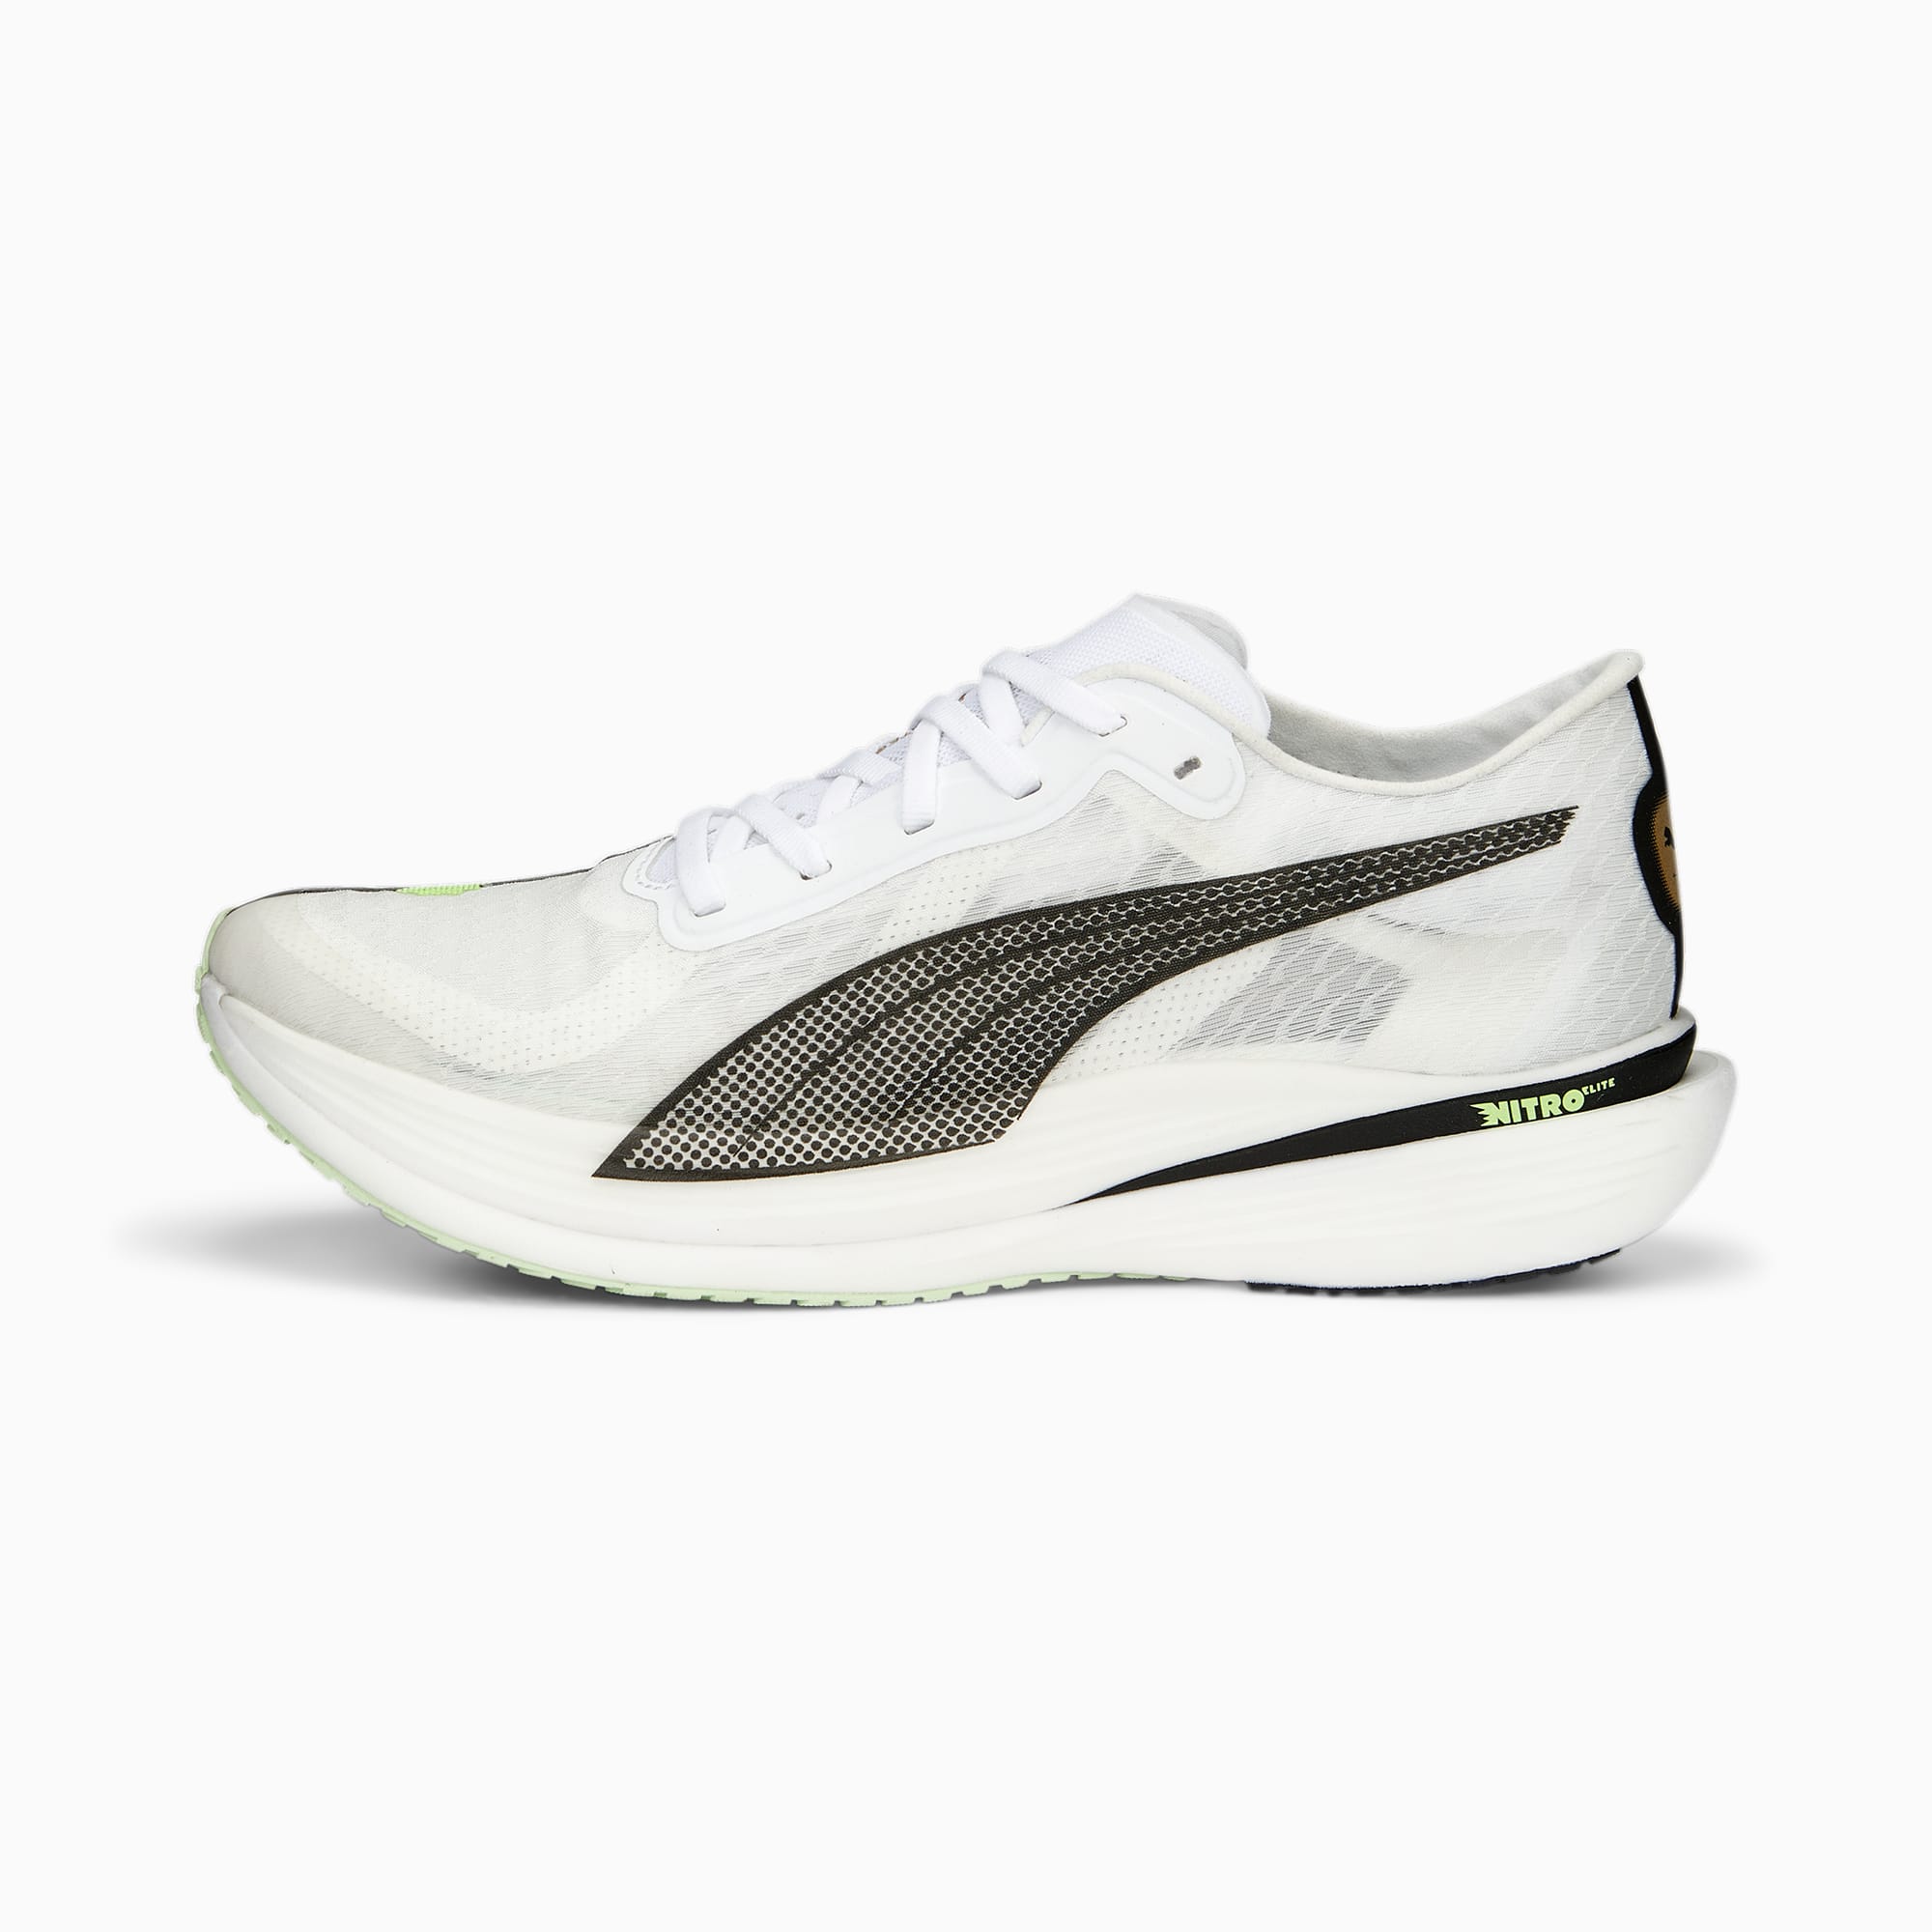 PUMA Deviate Nitro Elite 2 Run 75 Running Shoes Women, Light Mint/White/Black